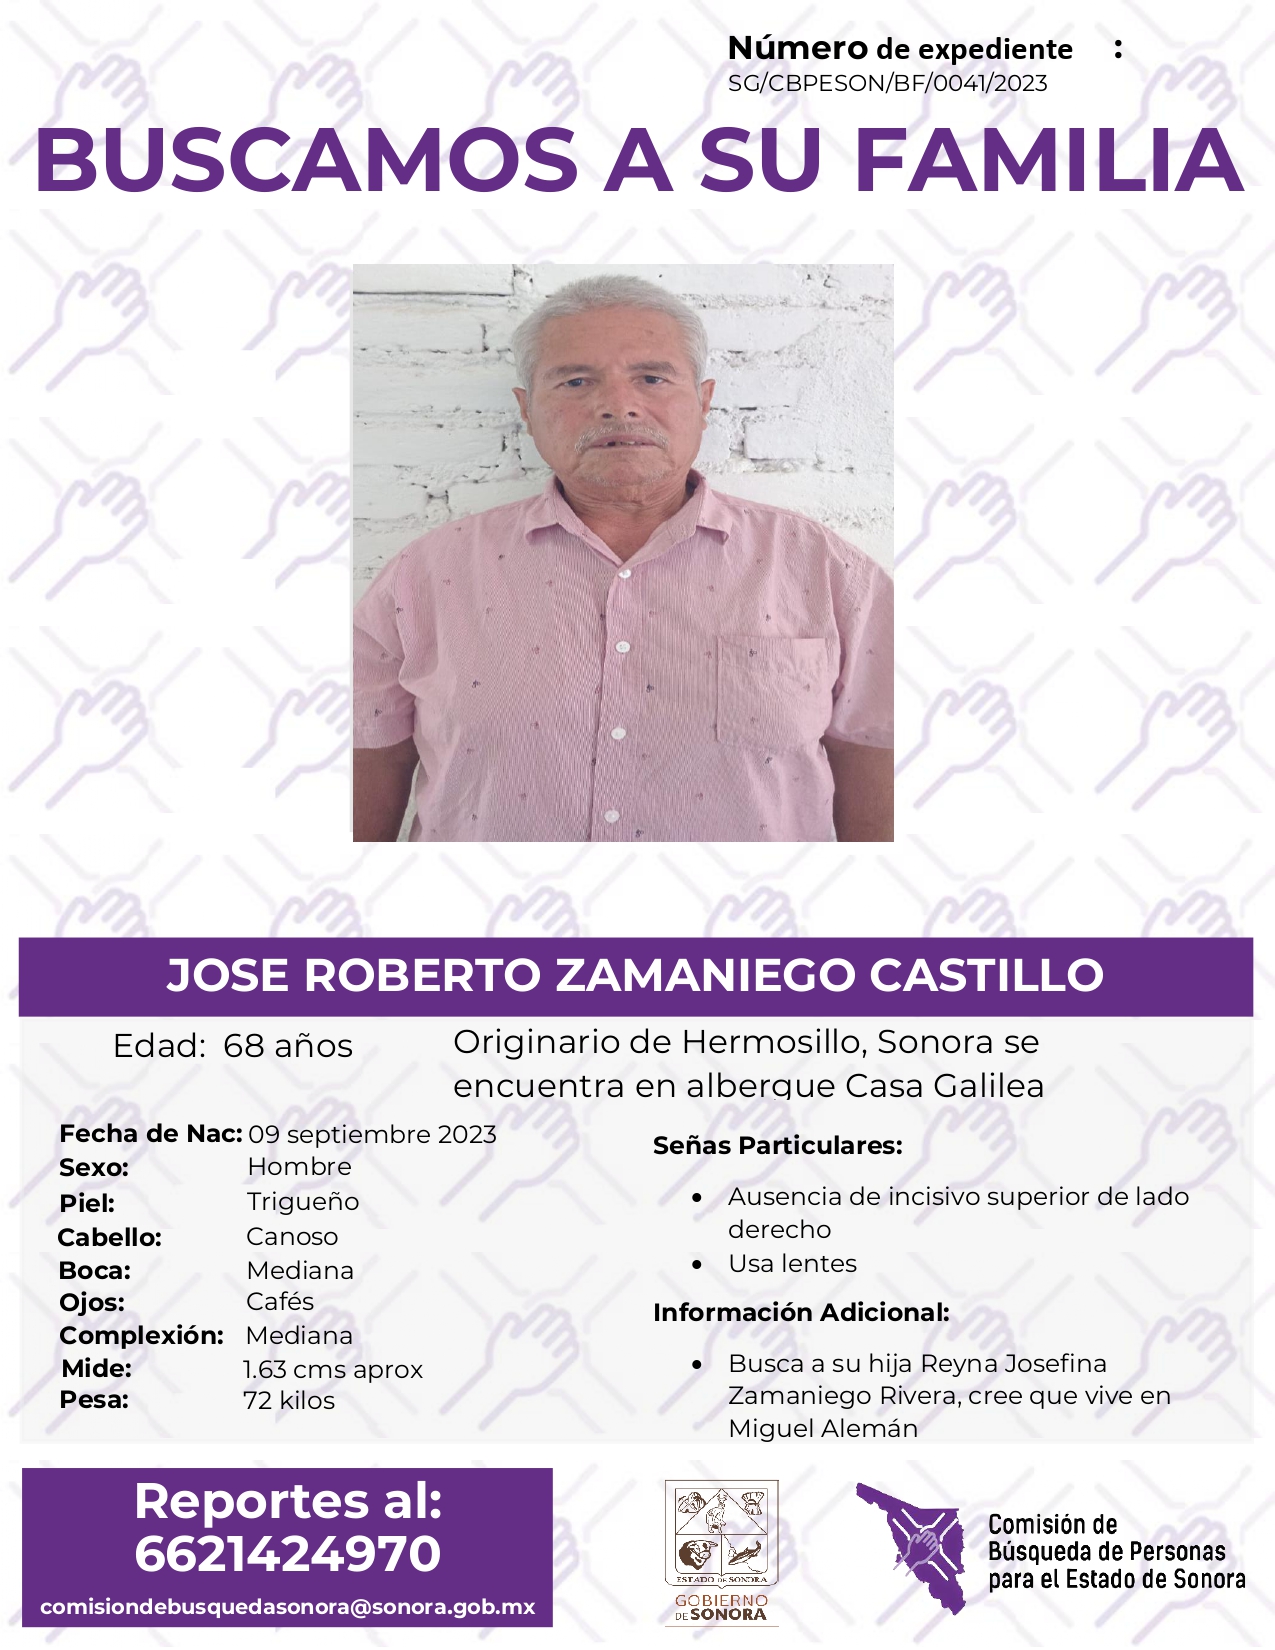 JOSÉ ROBERTO ZAMANIEGO CASTILLO - BUSQUEDA DE FAMILIA